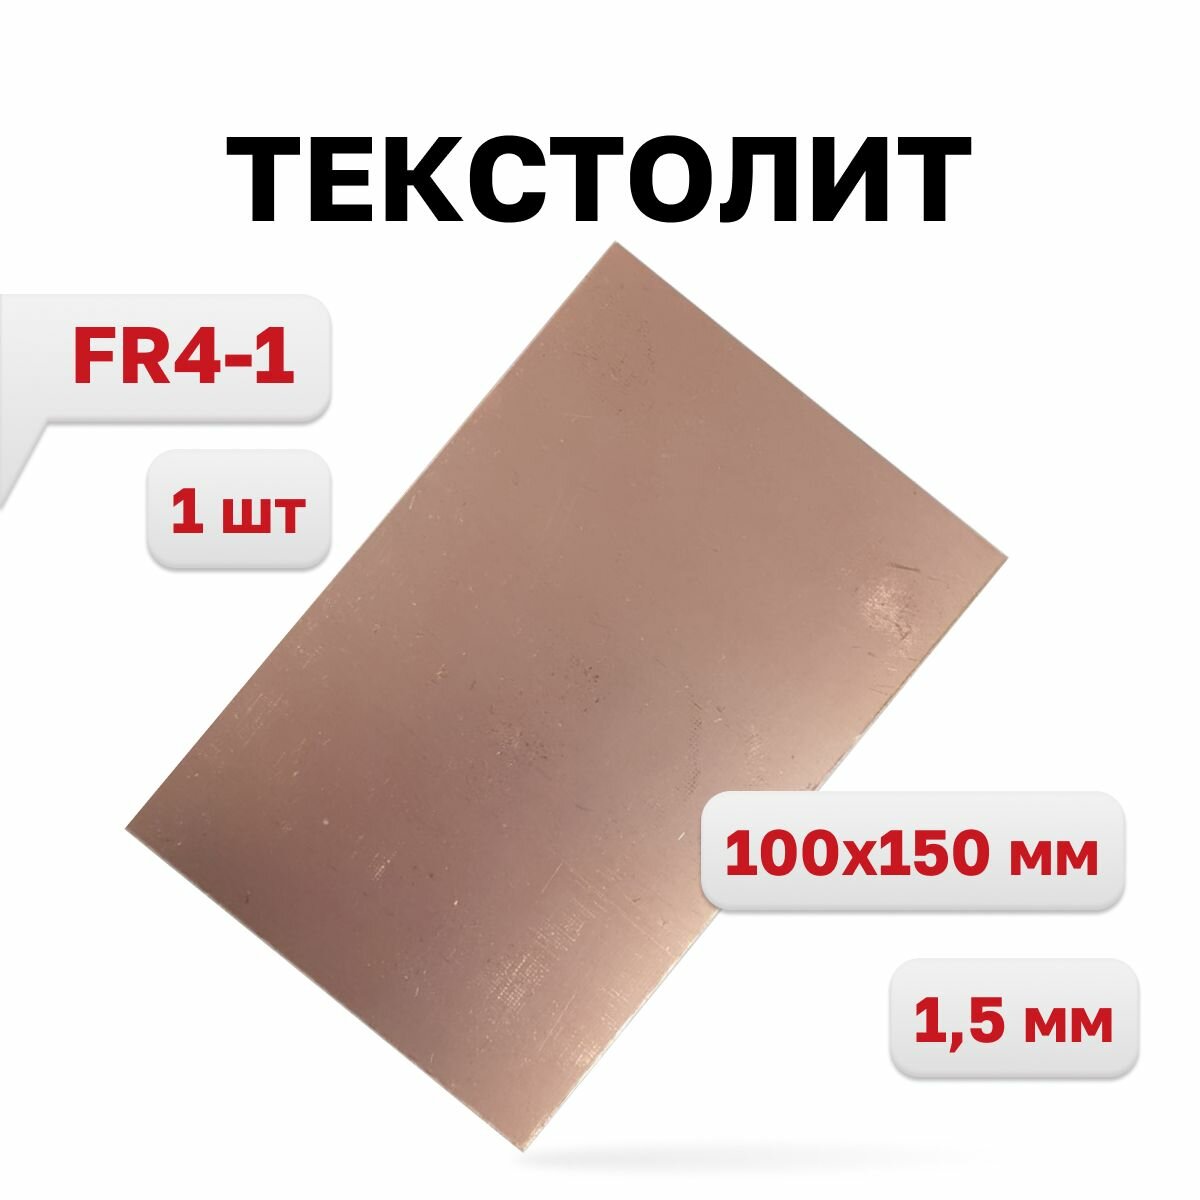 Текстолит FR4-1 1,5 мм, 100 x 150 мм, 1 шт.